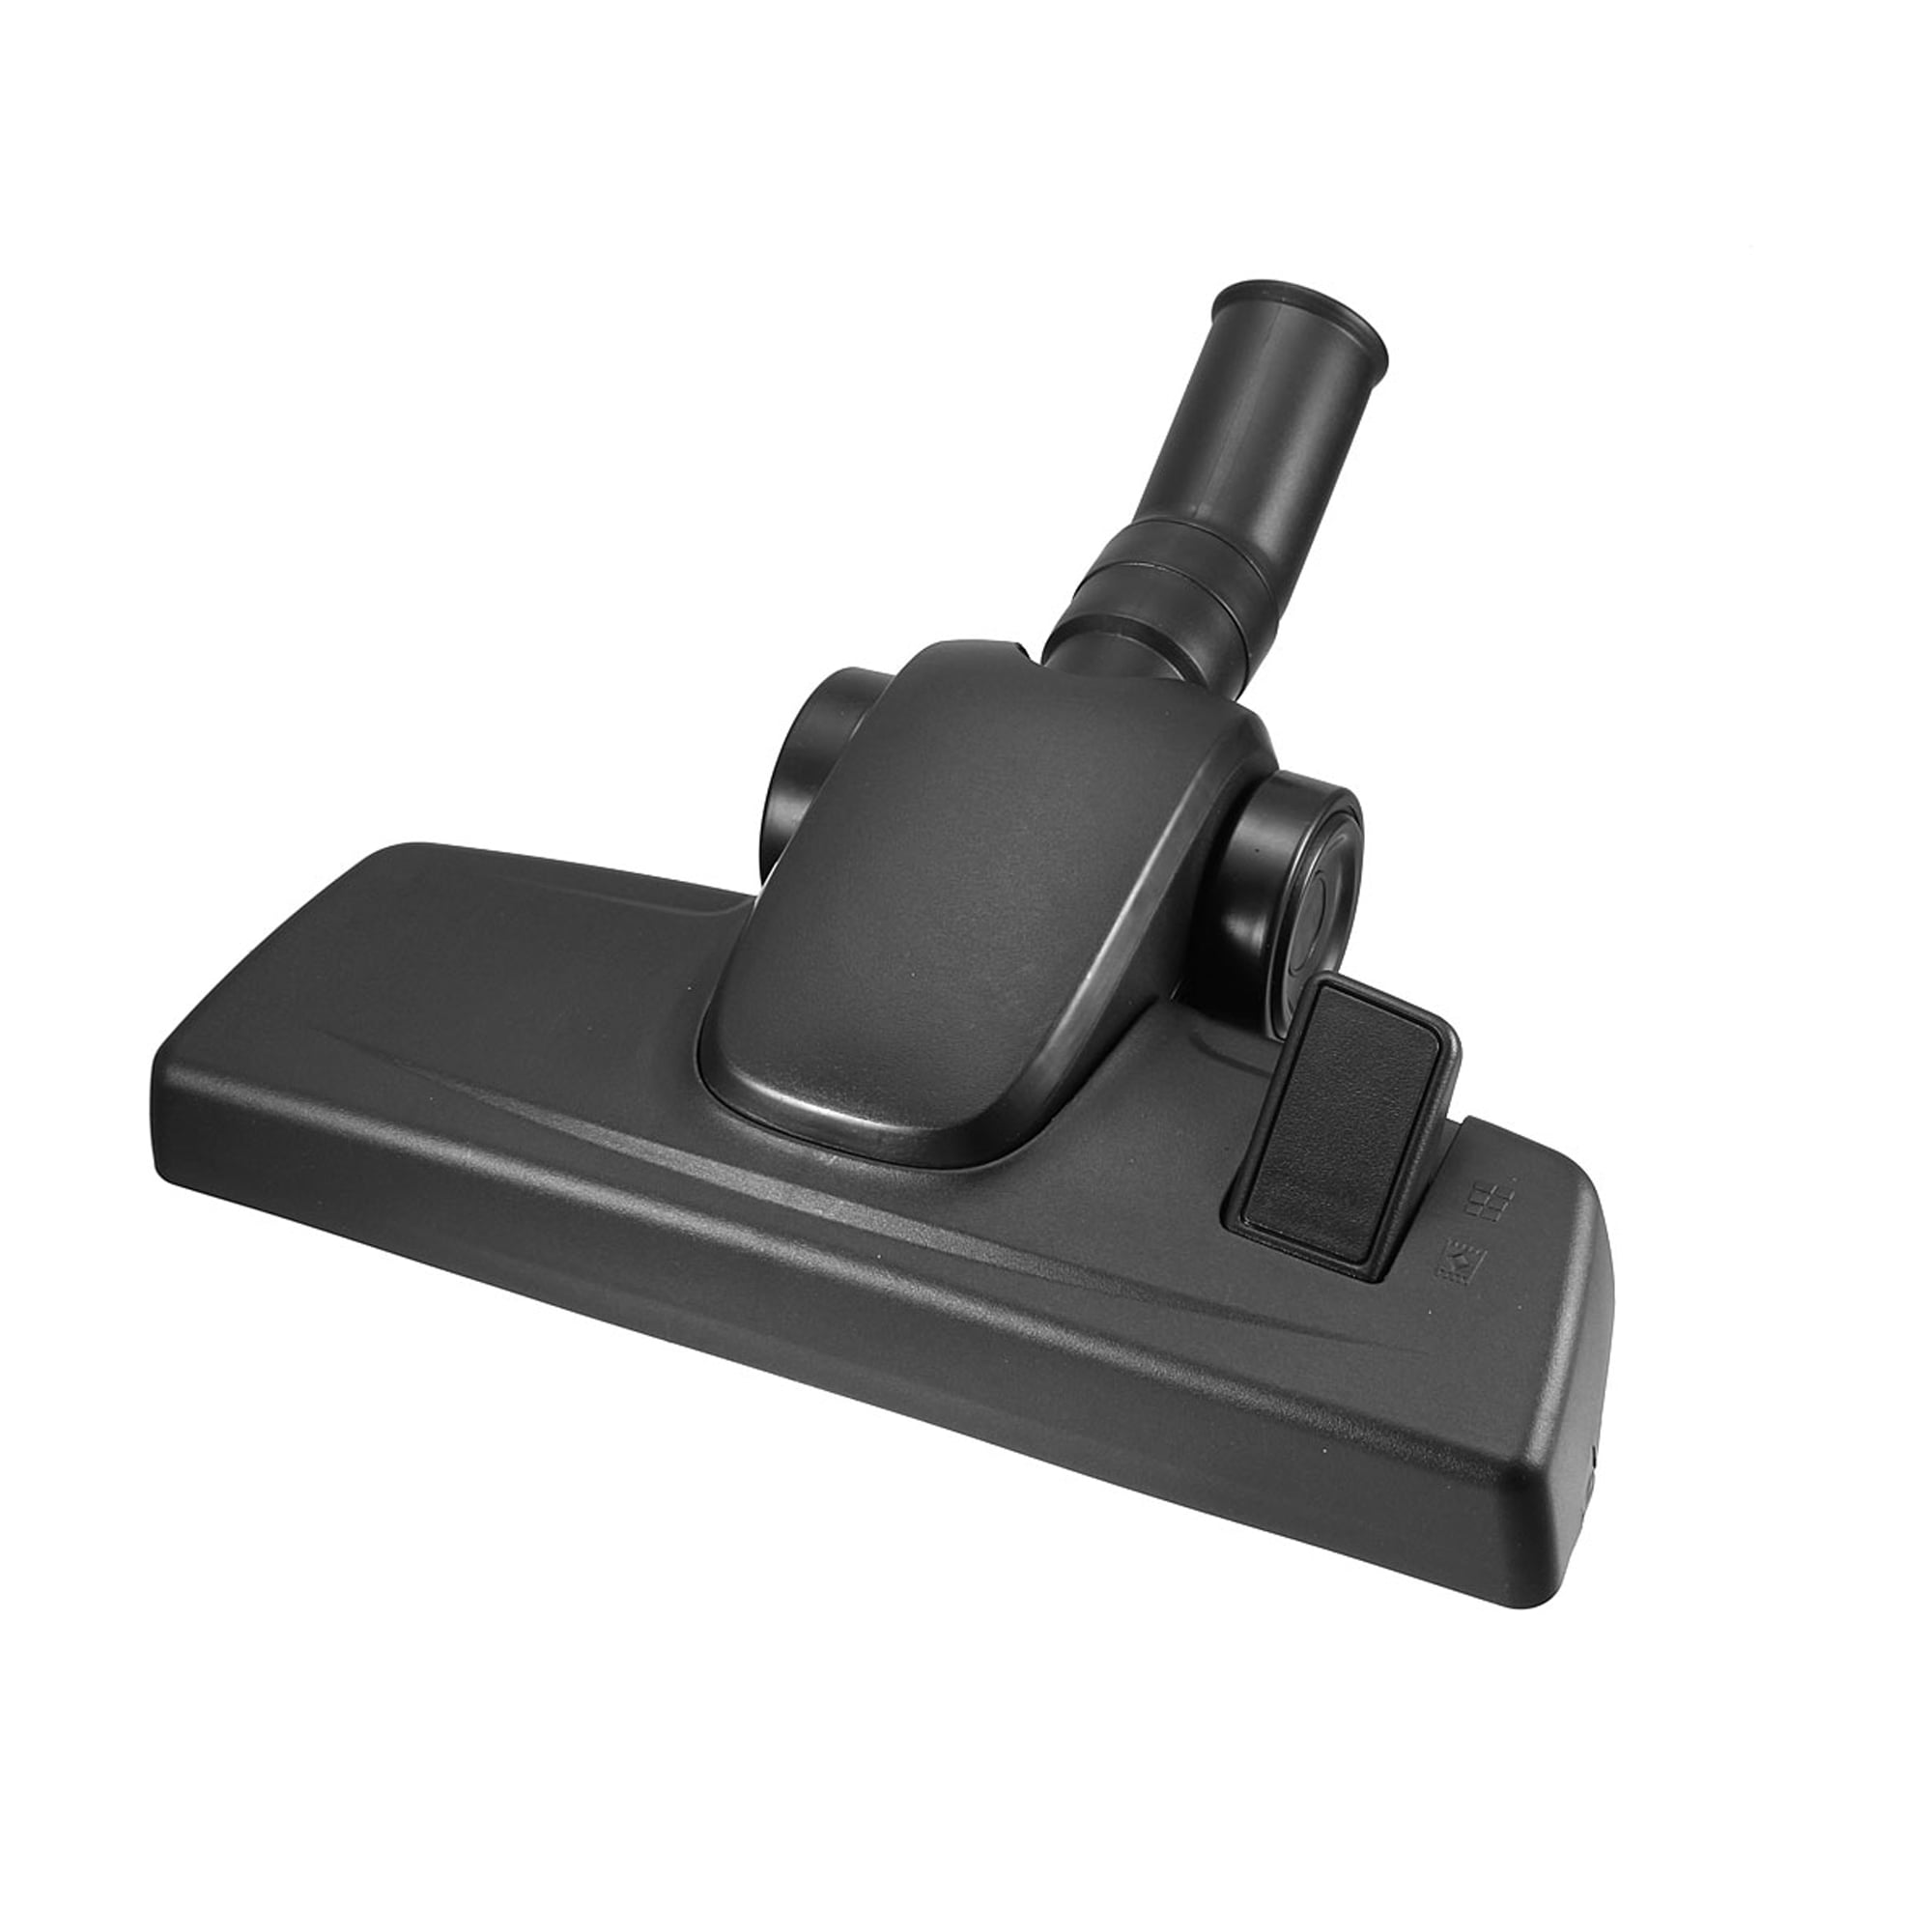 12" 32mm Dust Brush Head Tool Vacuum Cleaner Attachment 360°FlooDOFSDIUS US 